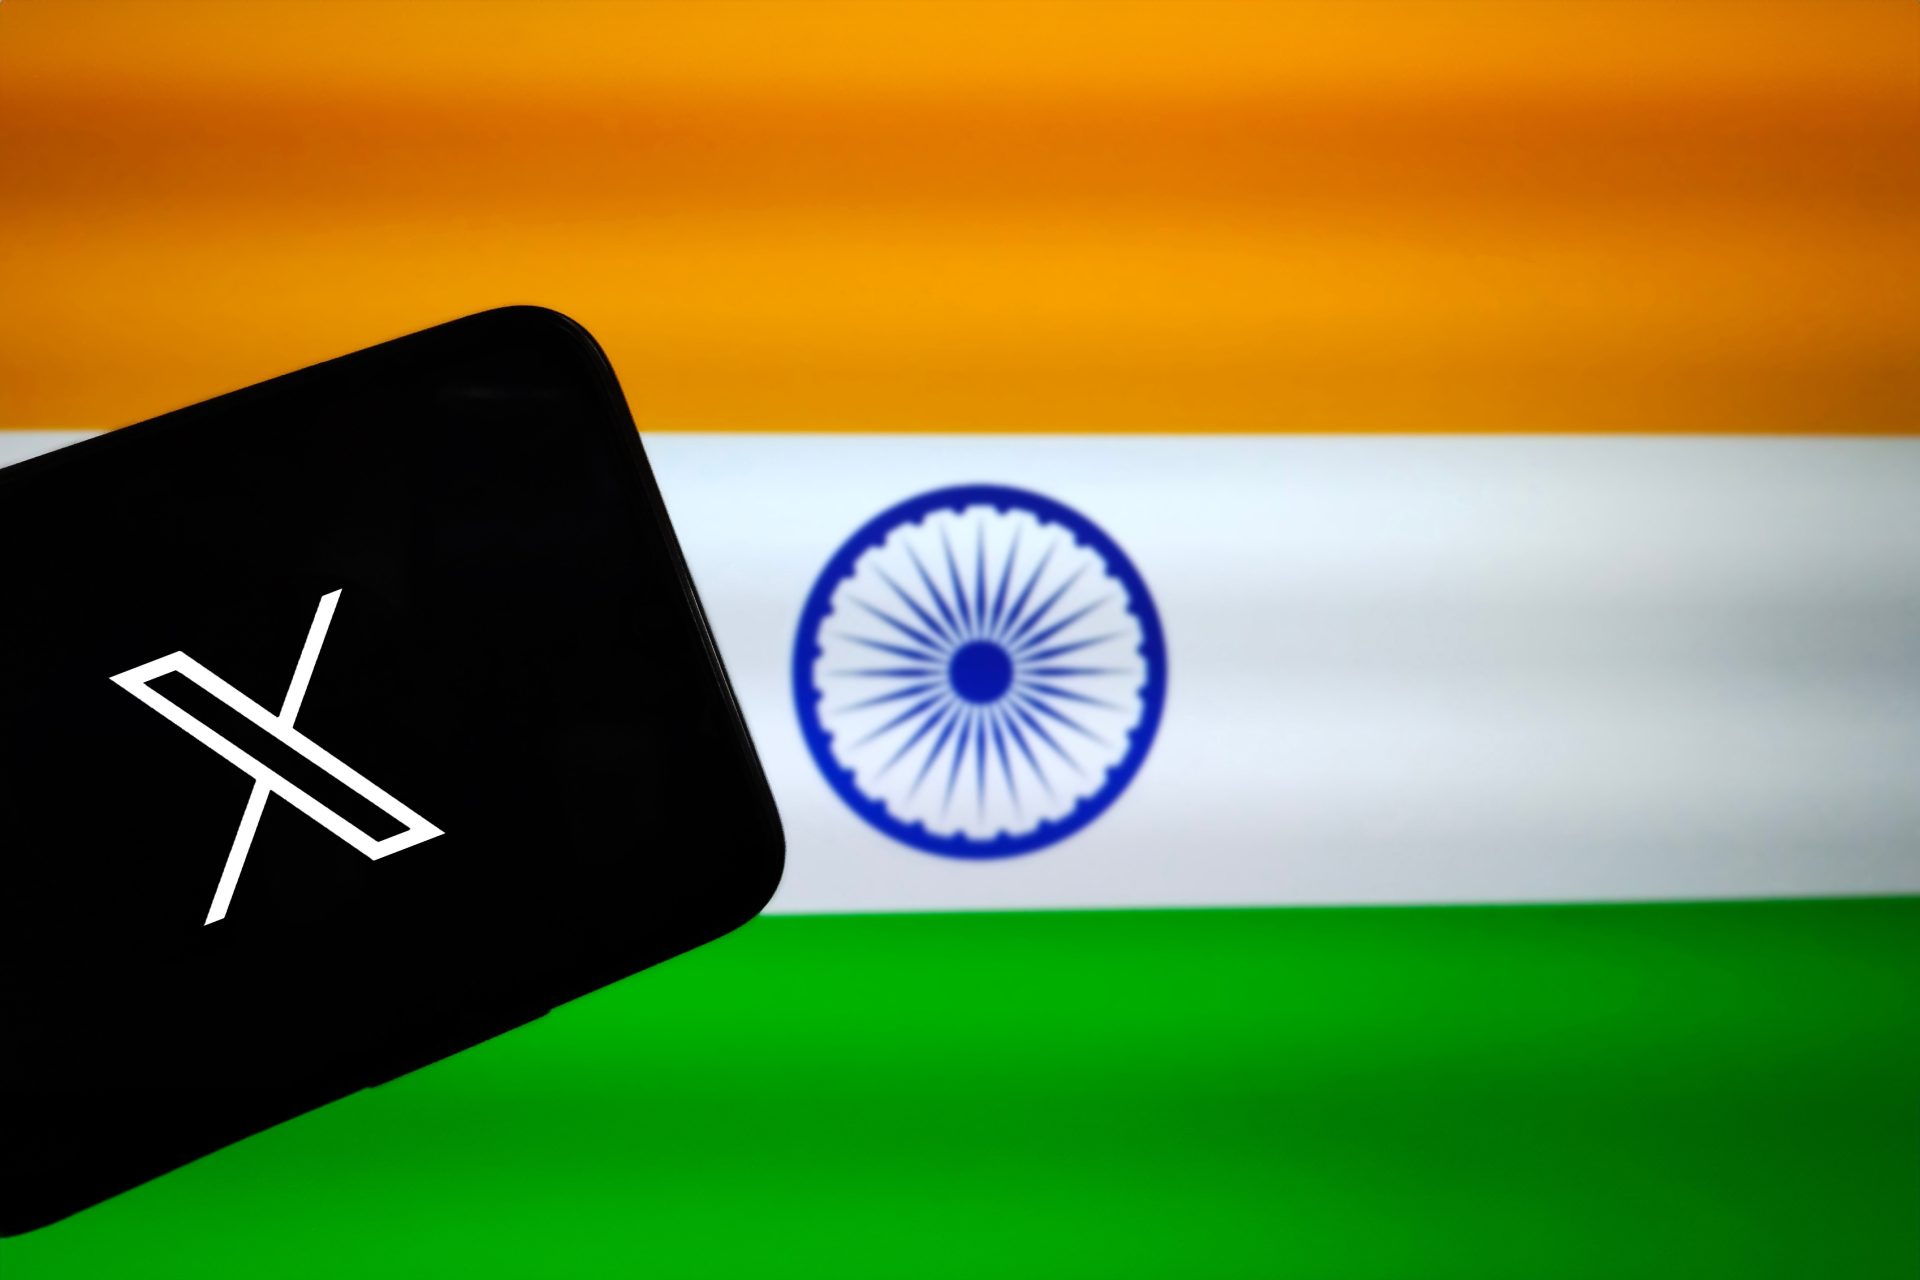 Plateforme X bloque des messages politiques en Inde sur demande officielle